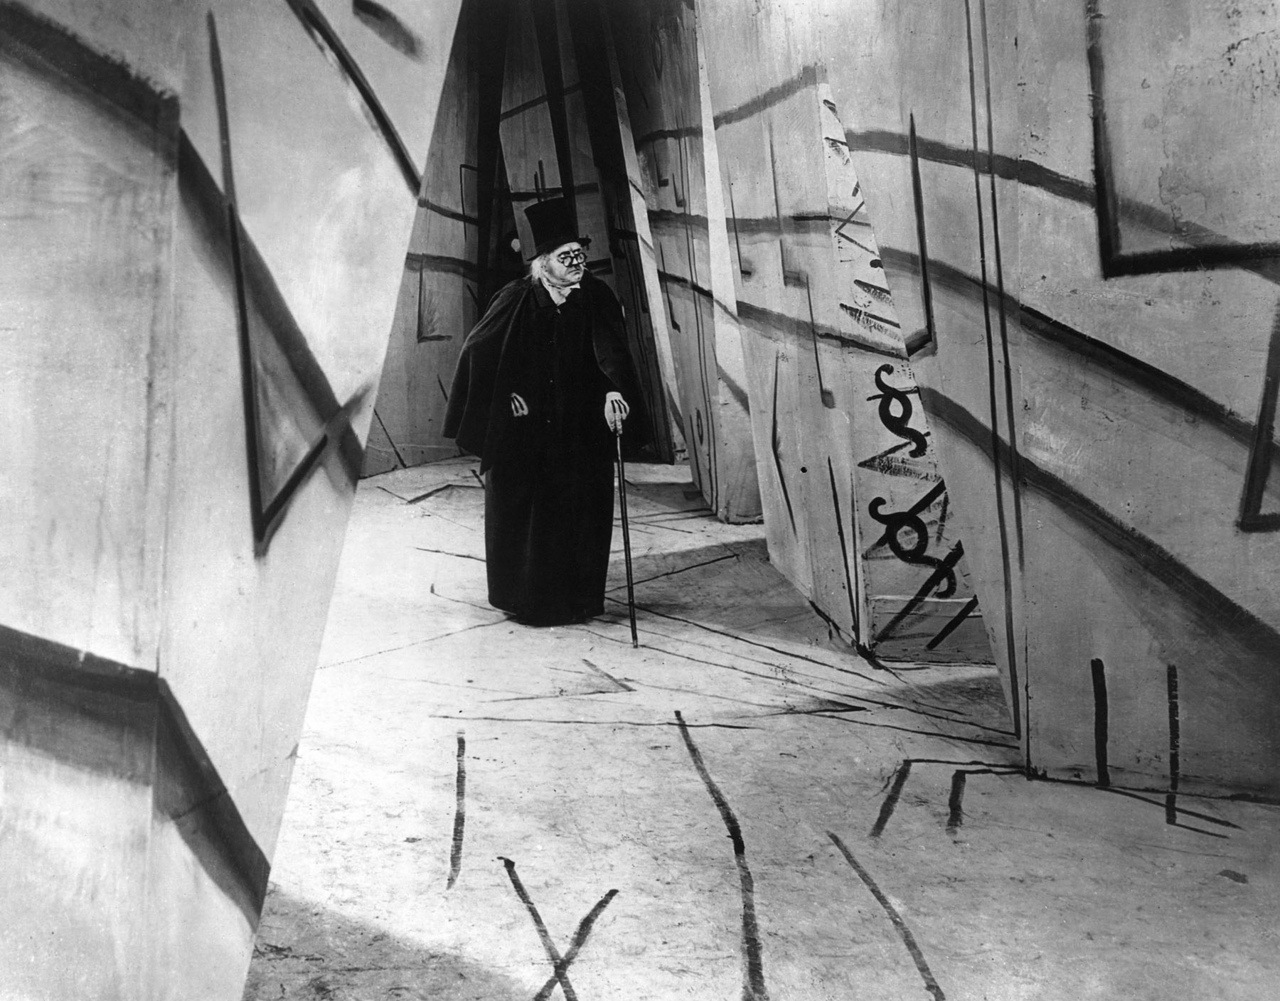 Das Cabinet Des Dr Caligari Wiesbadener Burgfestspiele